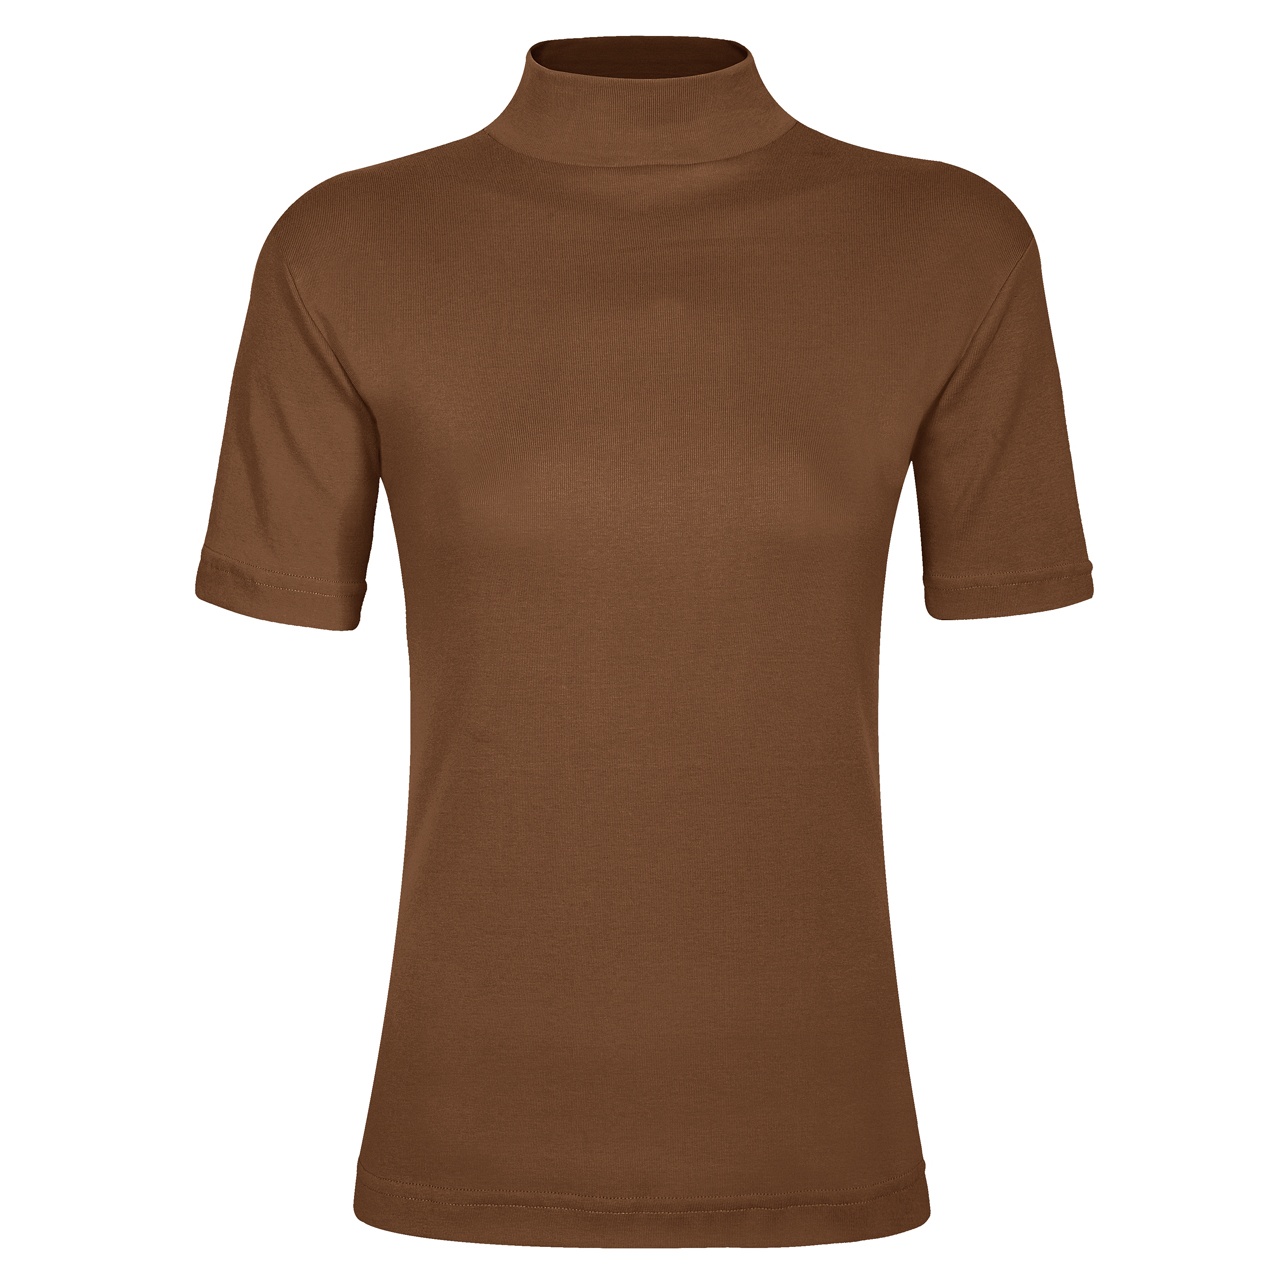 تی شرت زنانه ساروک مدل TZY5cm02 رنگ قهوه ای